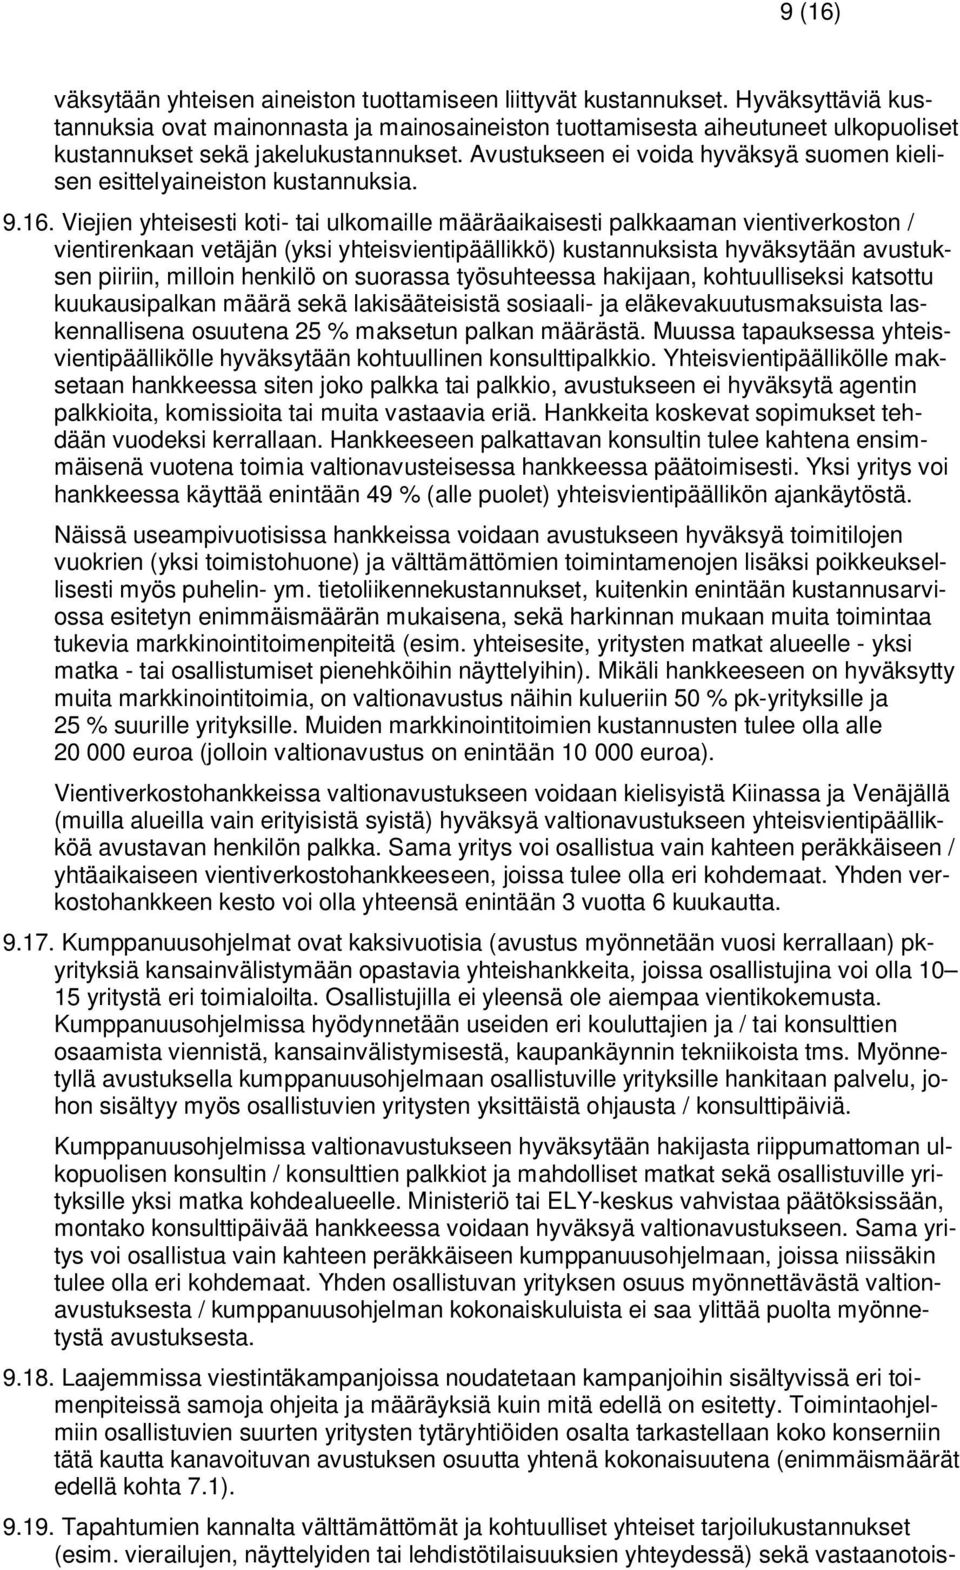 Avustukseen ei voida hyväksyä suomen kielisen esittelyaineiston kustannuksia. 9.16.